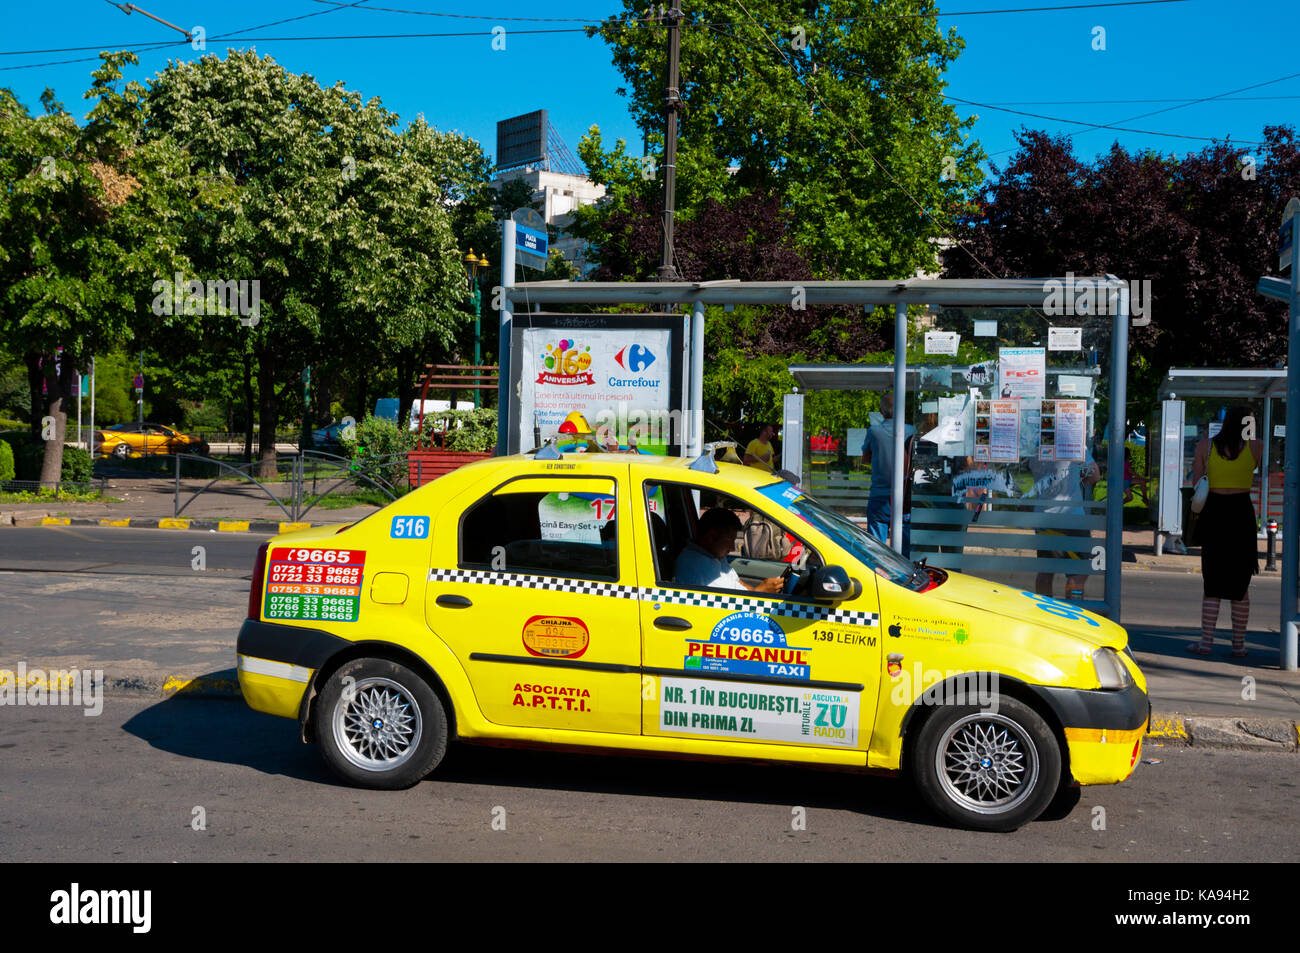 Taxi, Bucharest, Romania Stock Photo - Alamy